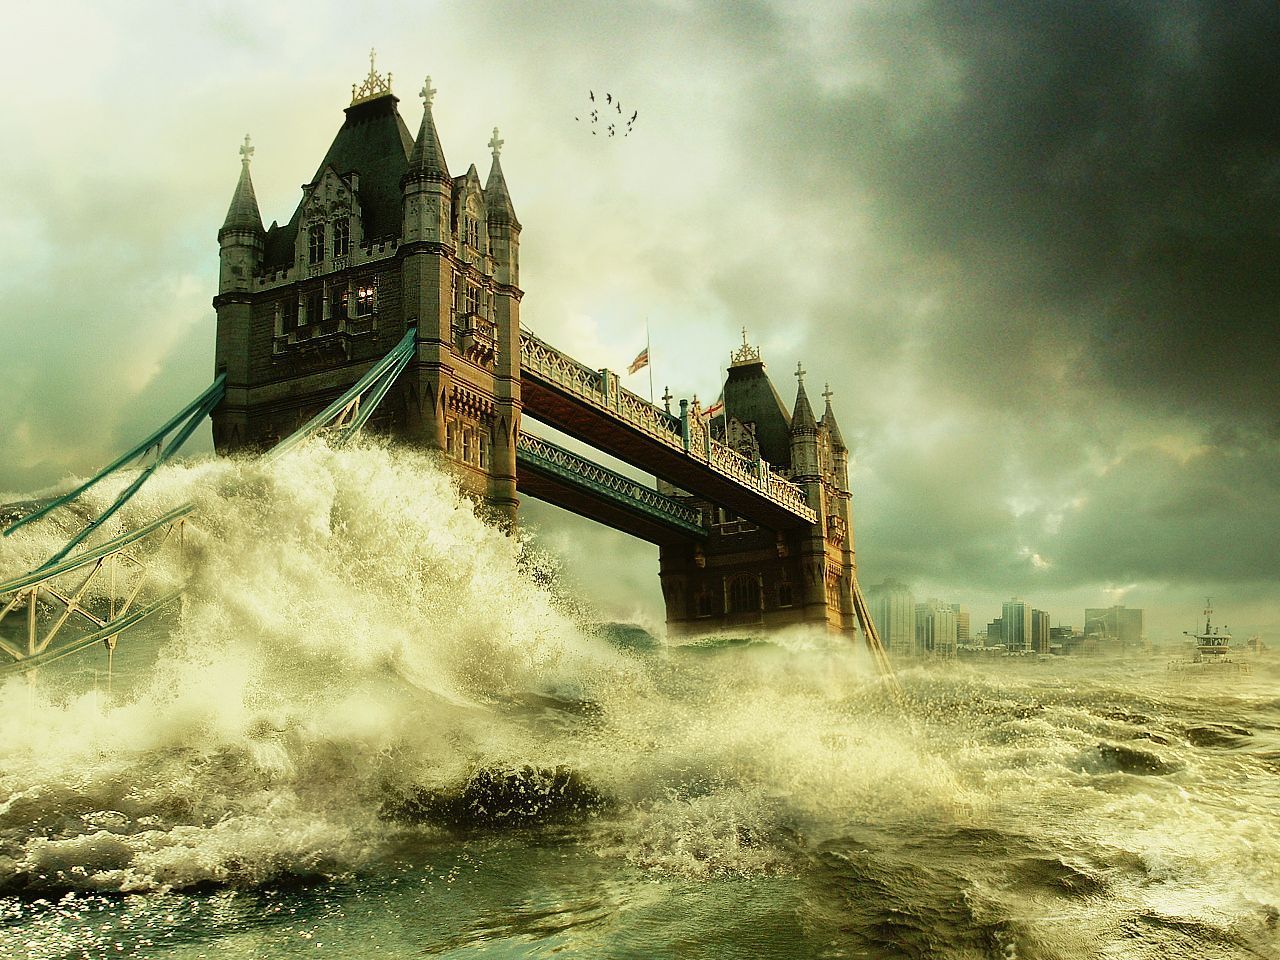 Tower Bridge. by phyzer on DeviantArt